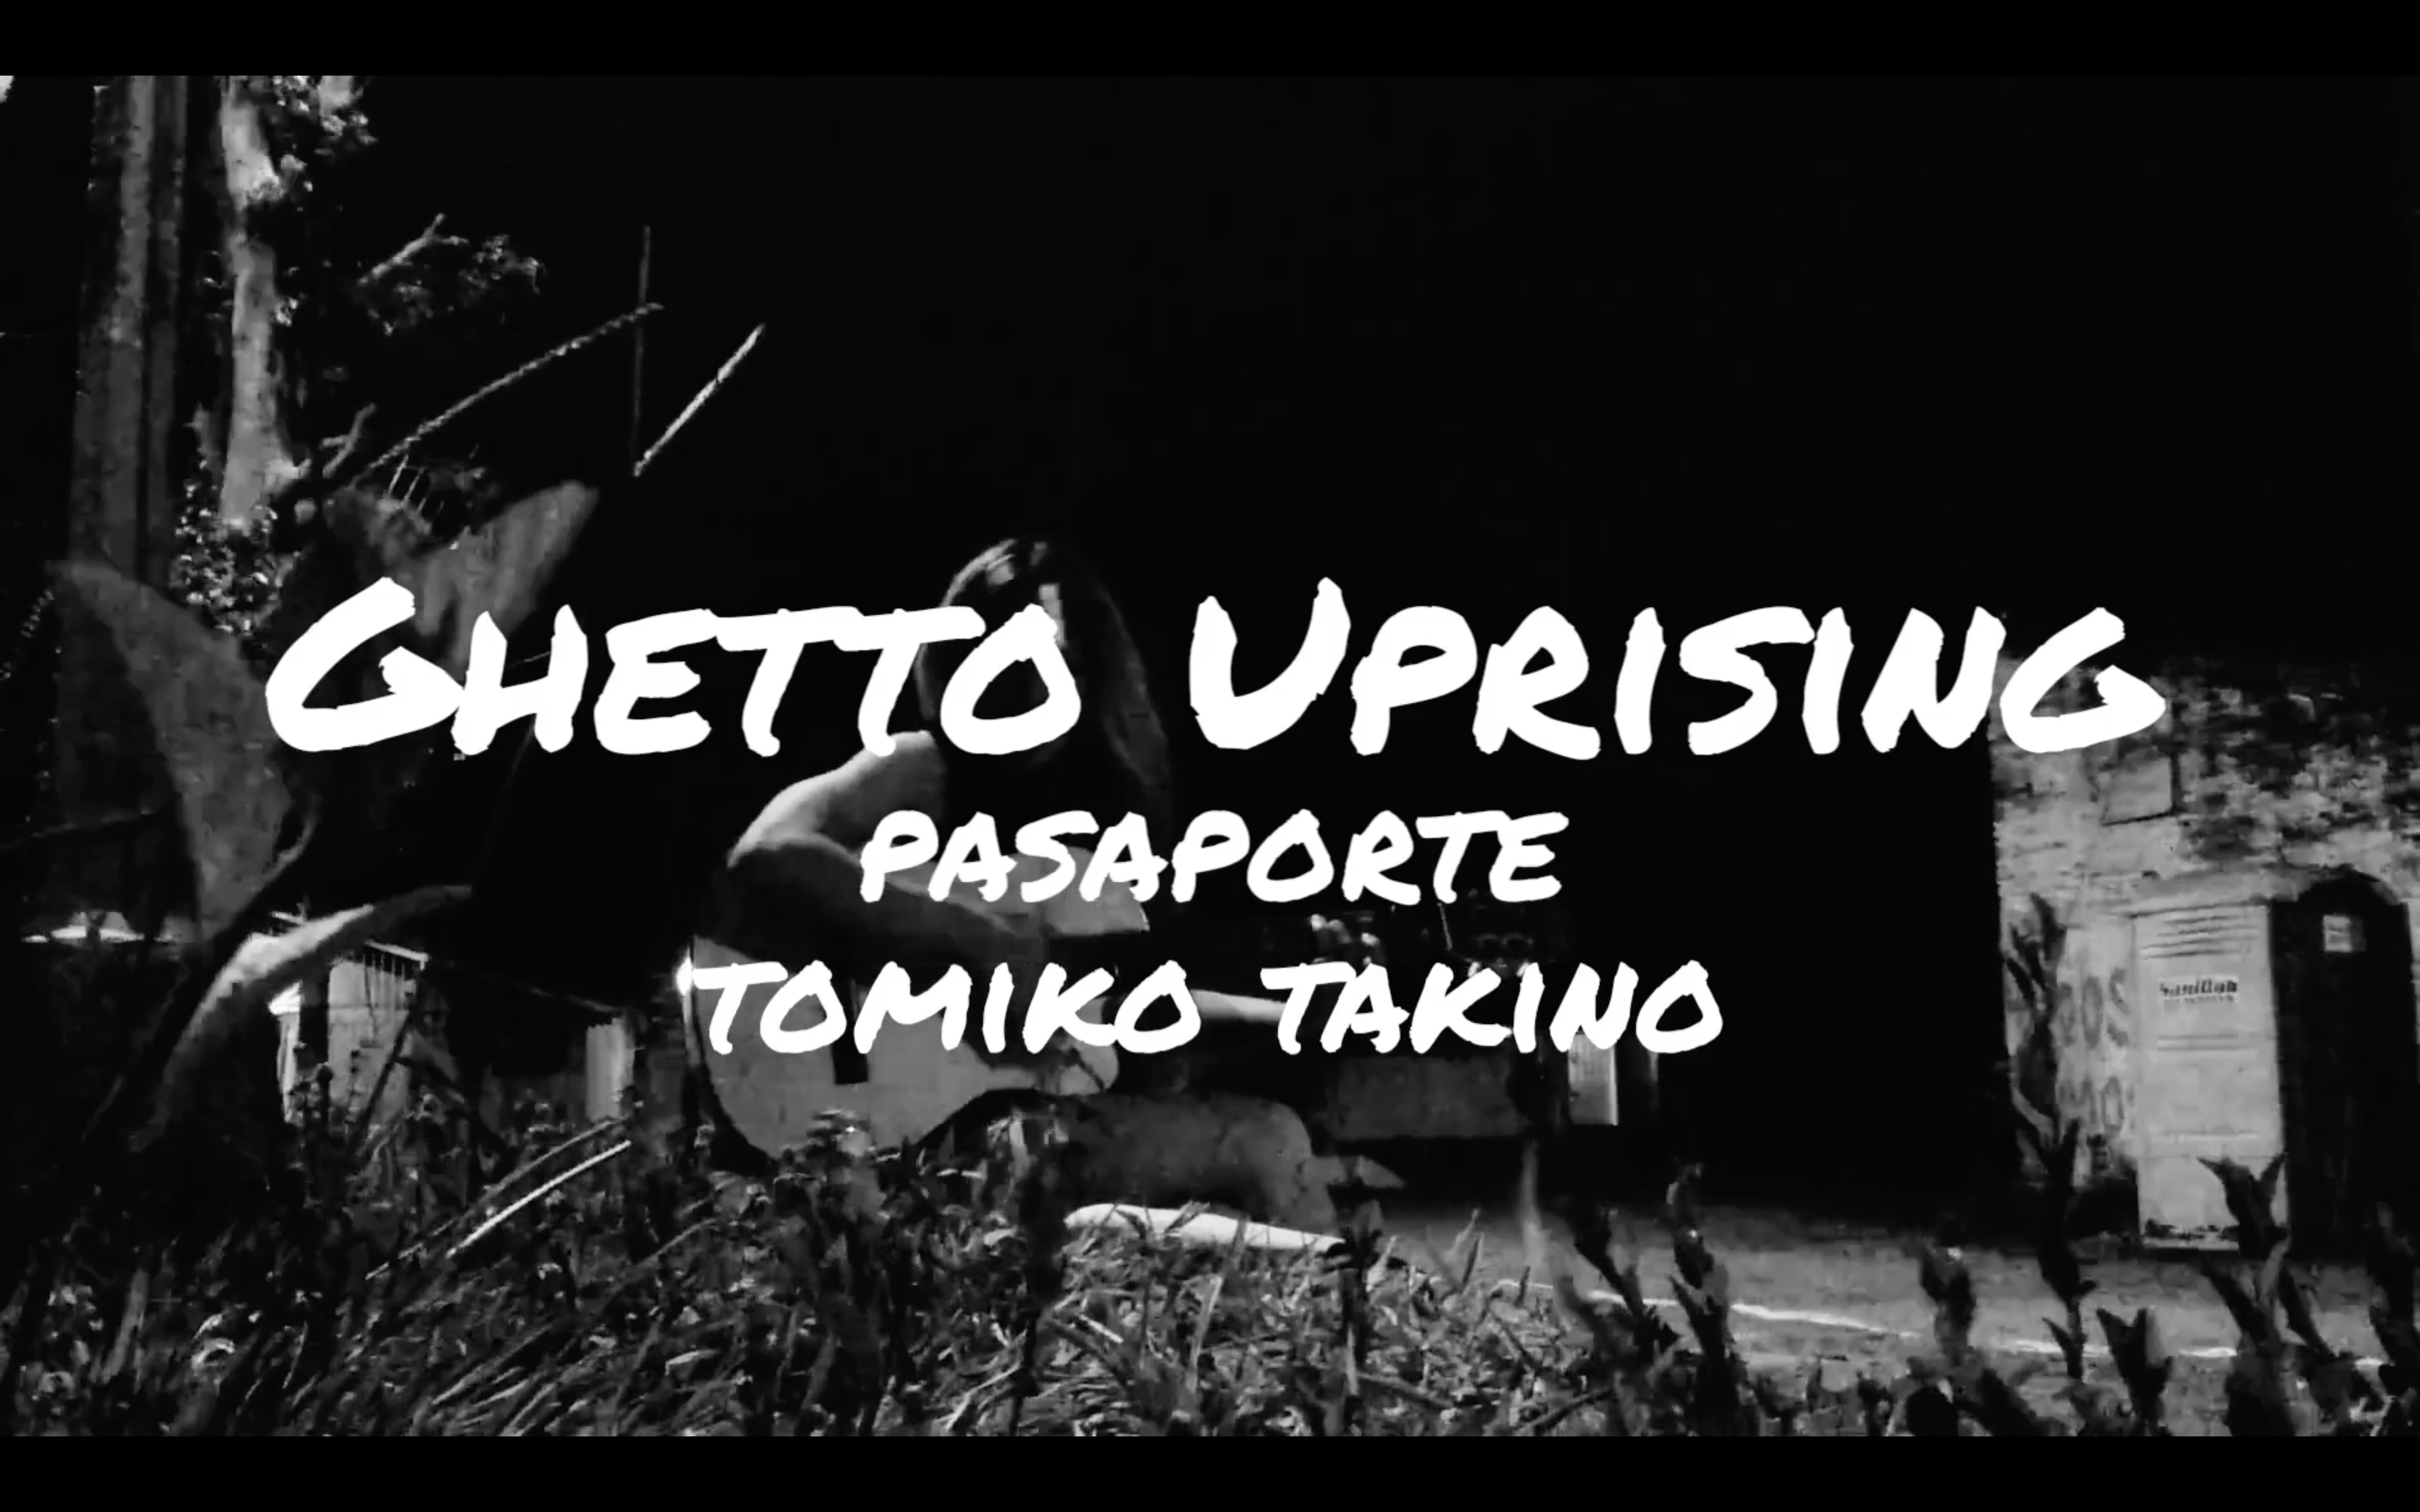 Ghetto Uprising – Tomiko Takino